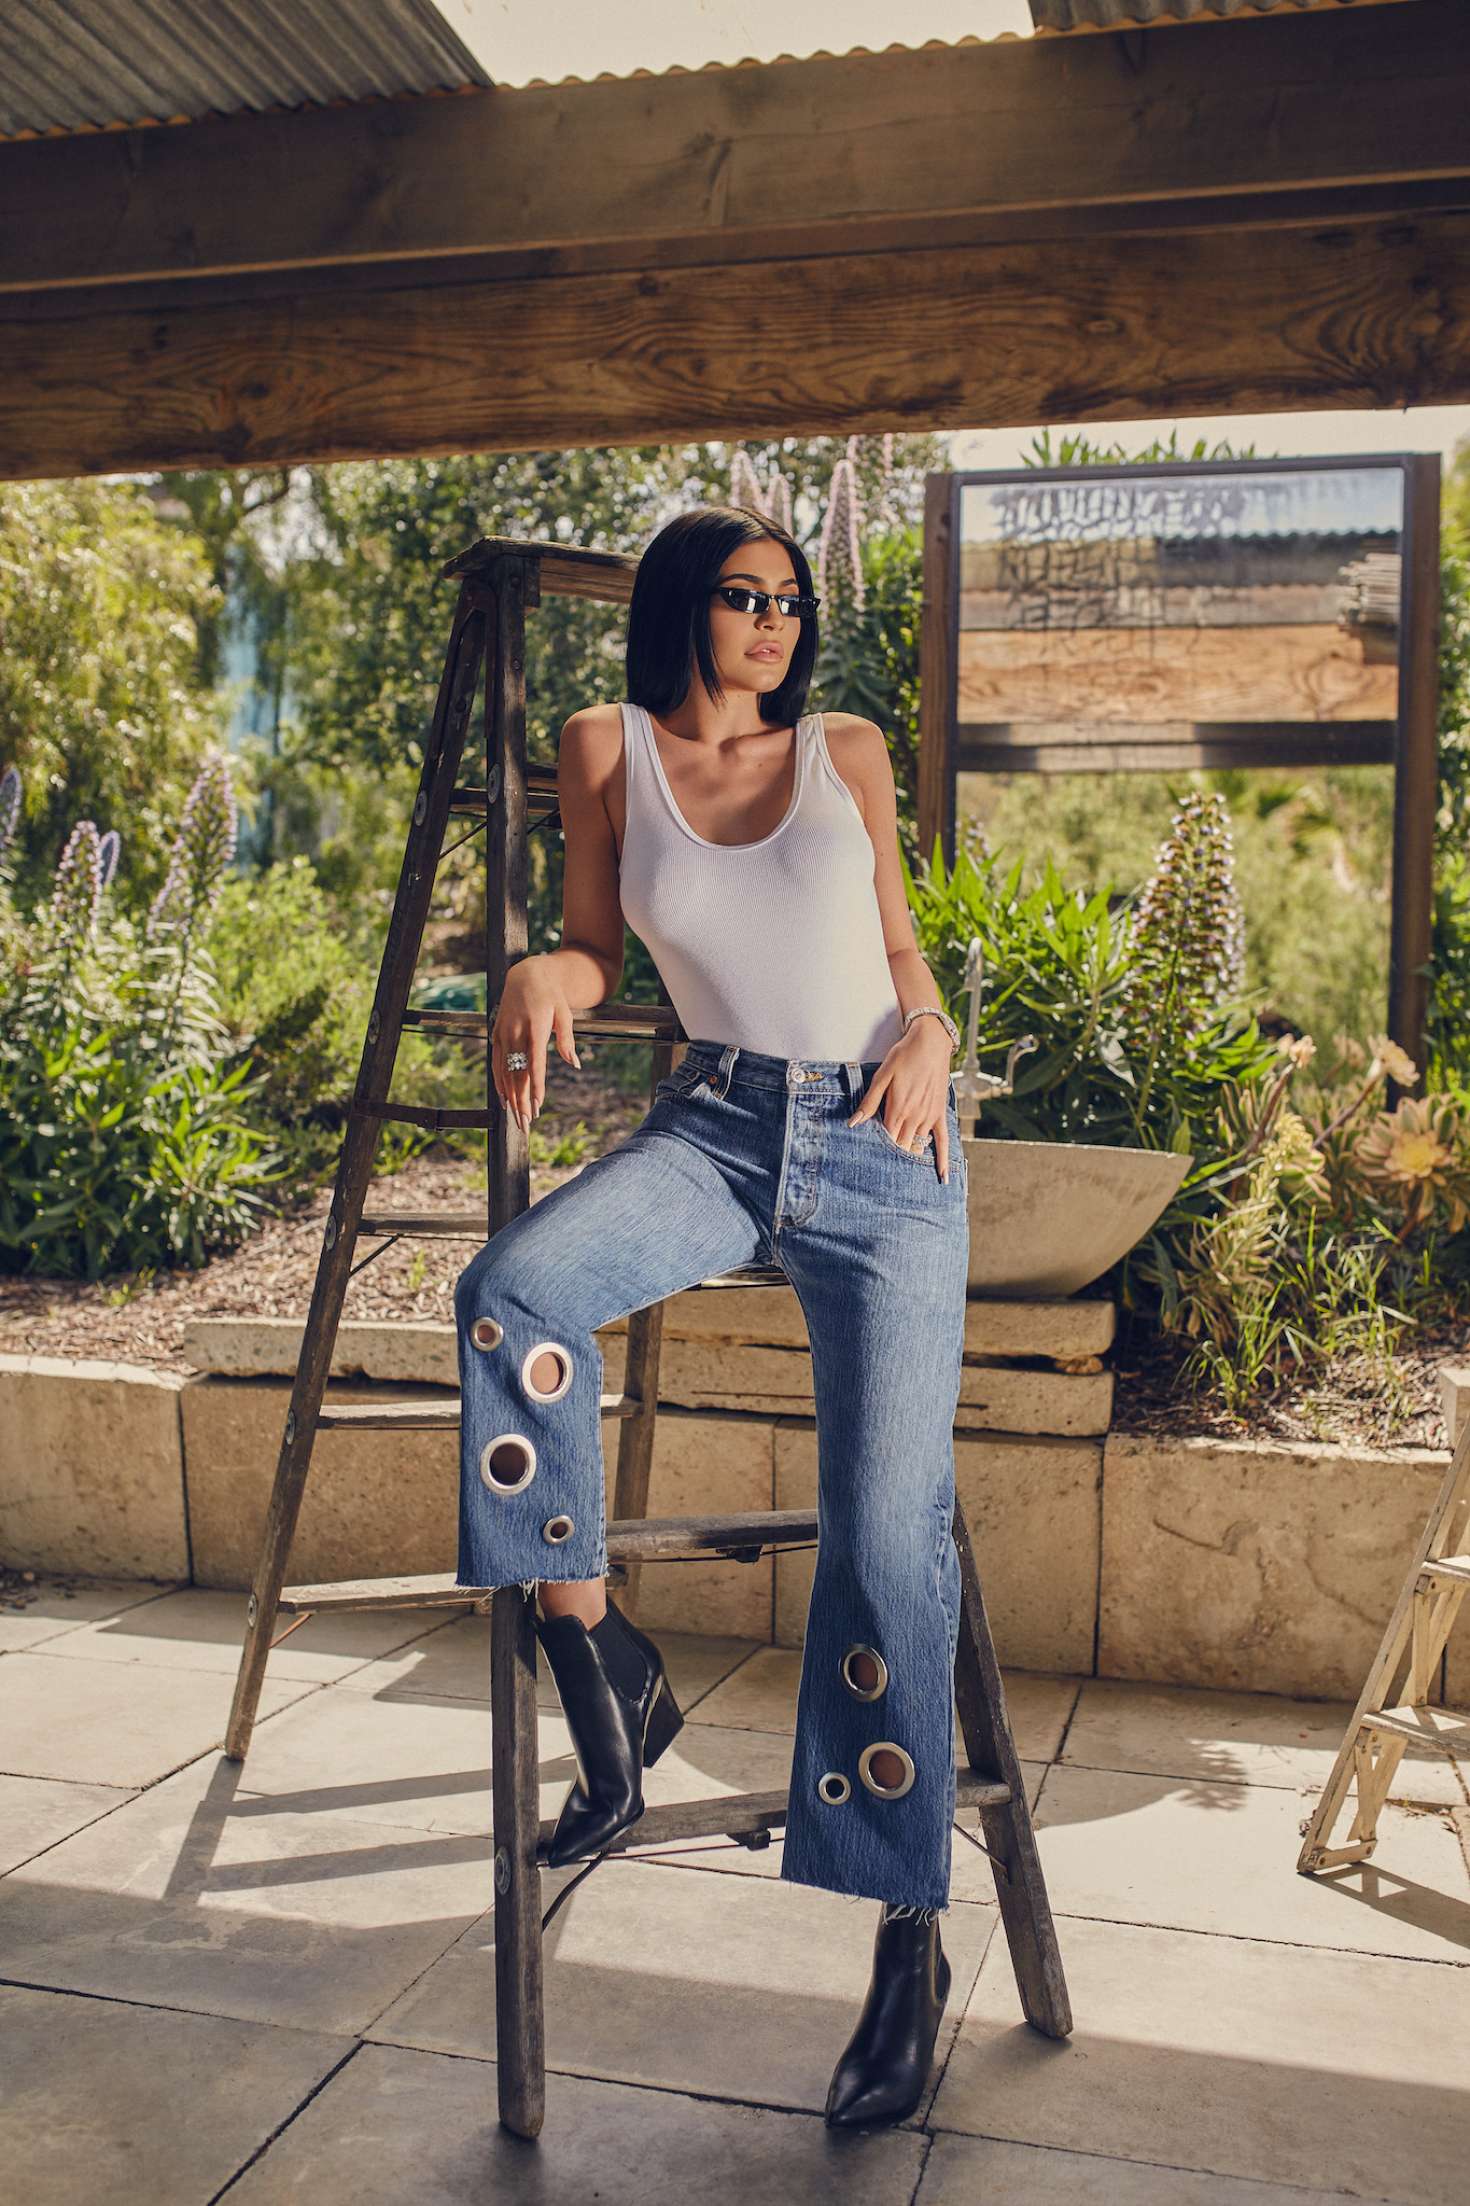 Kylie Jenner Model Celebrity Women Glasses Women With Glasses Jeans Black Hair 1470x2206